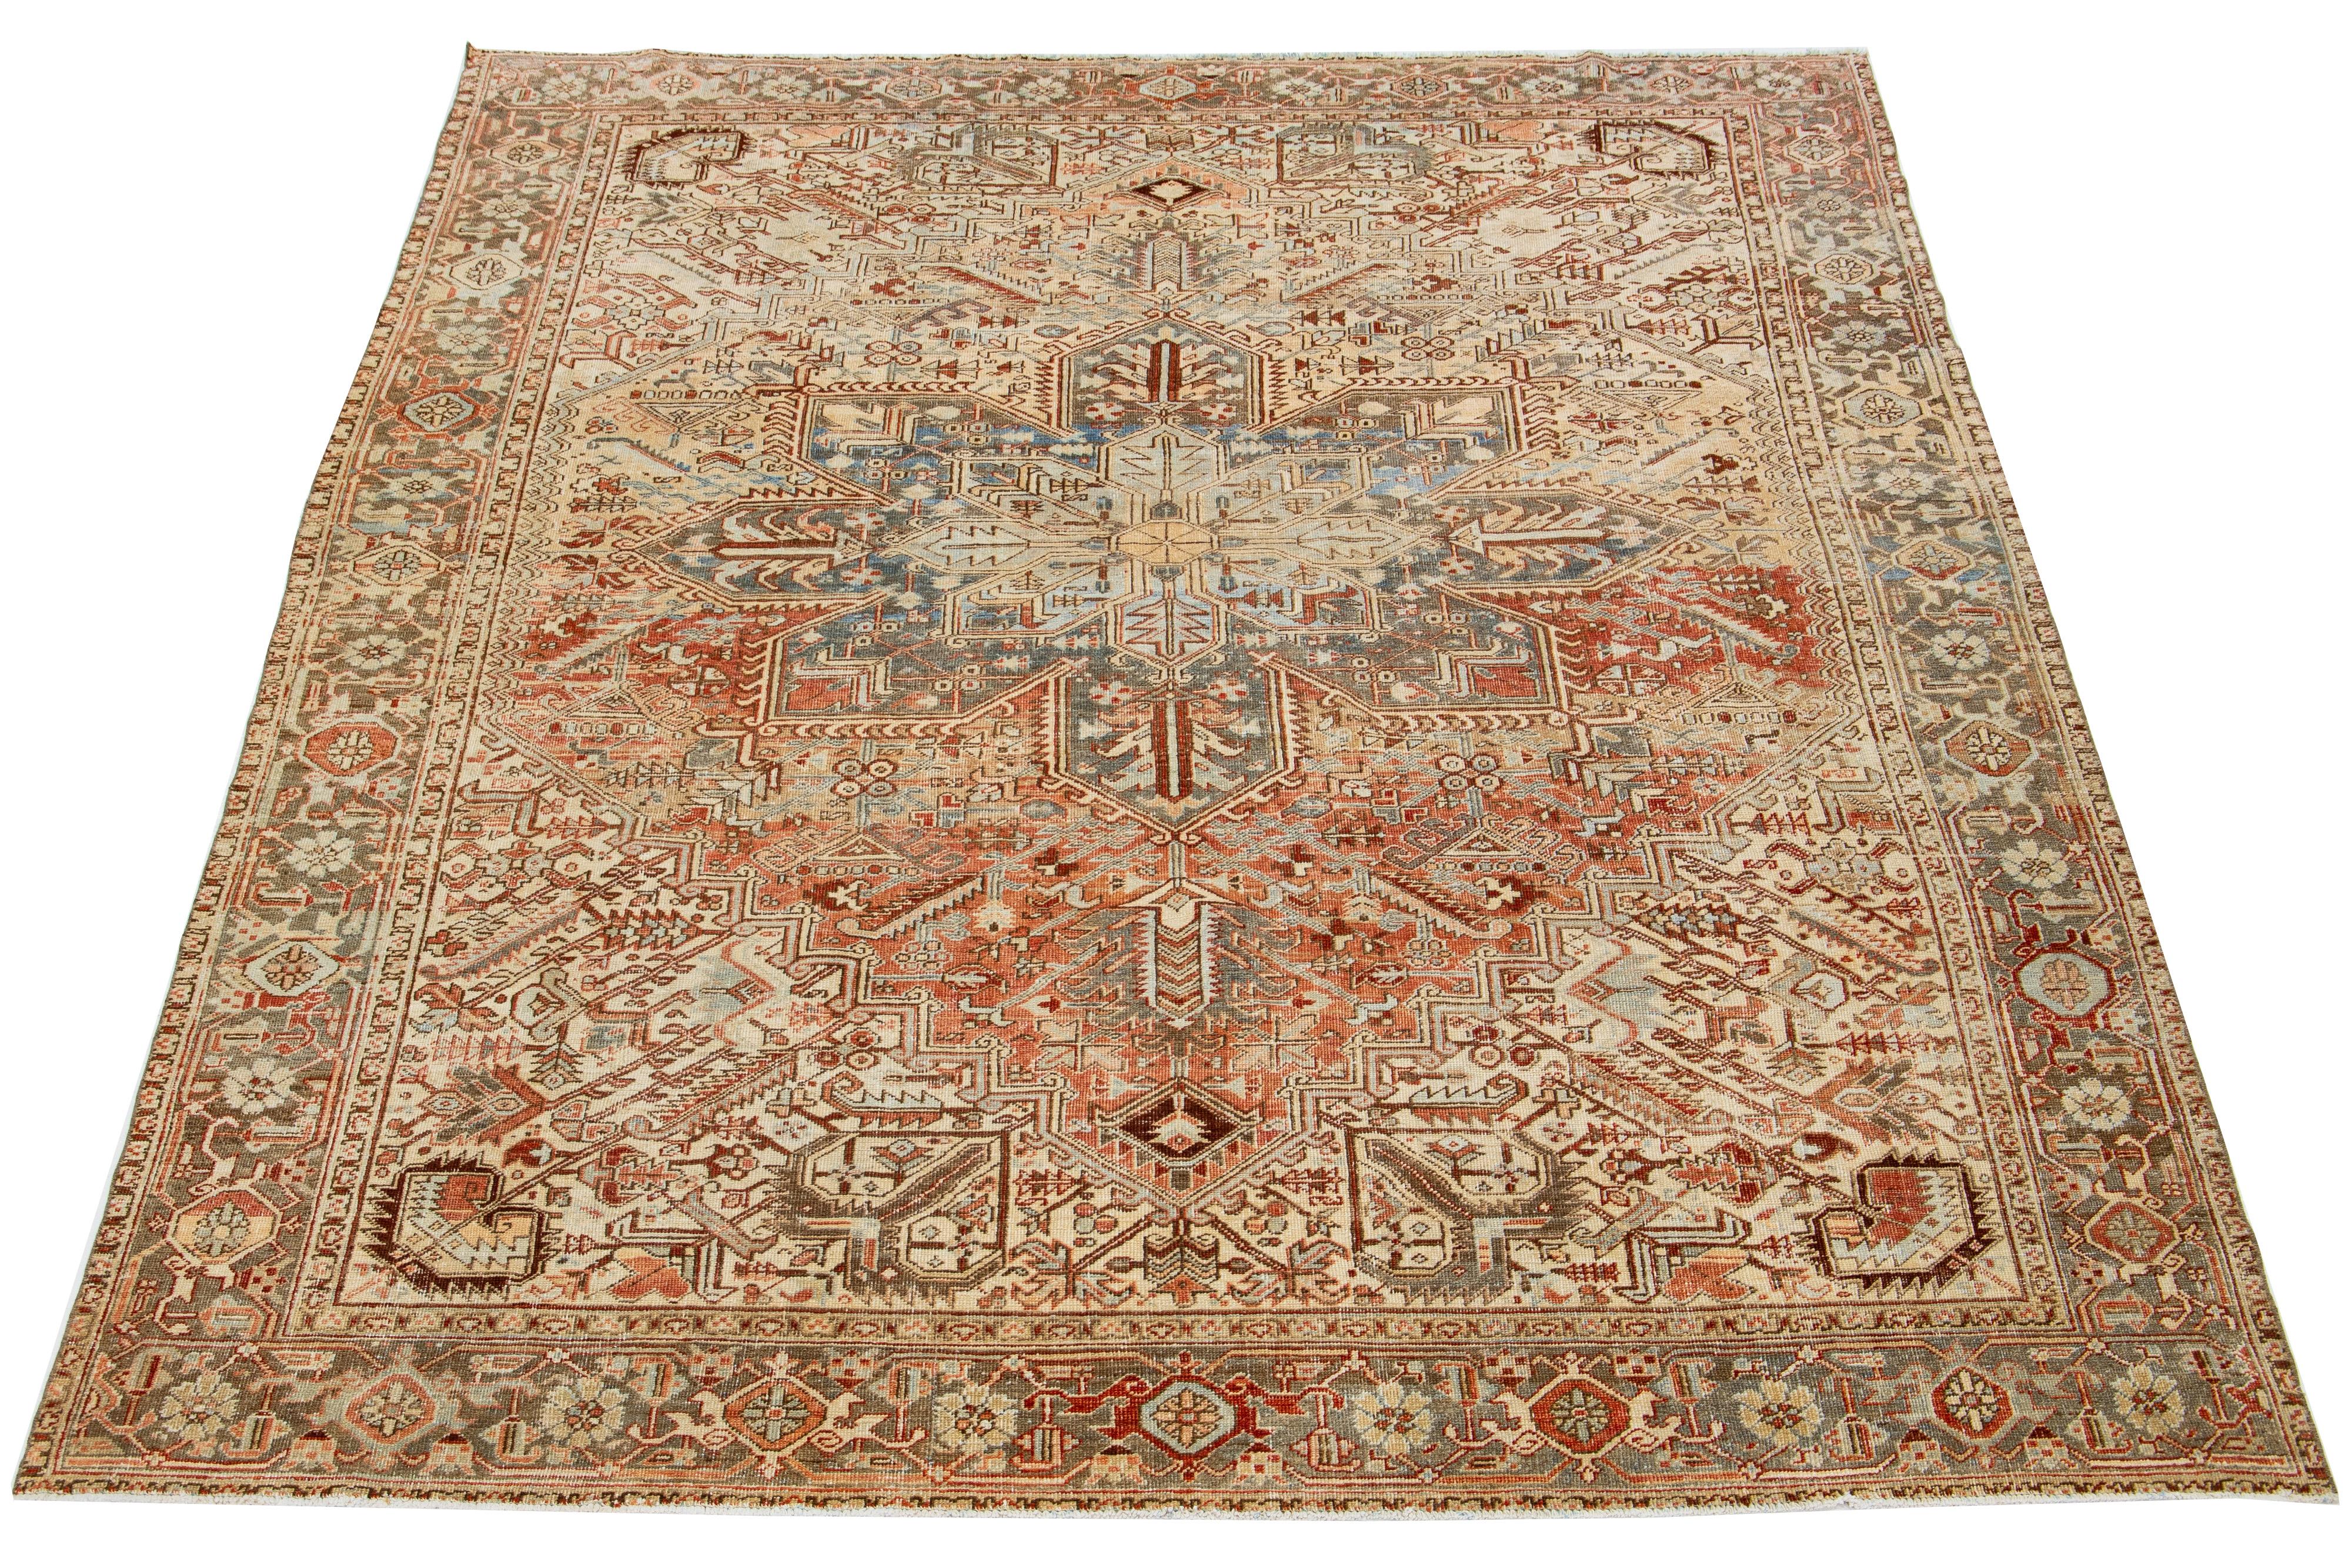 Dieser antike persische Heriz-Teppich zeichnet sich durch ein fesselndes Allover-Muster mit Blau-, Rost-, Braun- und Elfenbeinschattierungen auf einem pfirsichfarbenen Feld aus. Es wird aus Wolle handgeknüpft.

Dieser Teppich misst 8'8' x